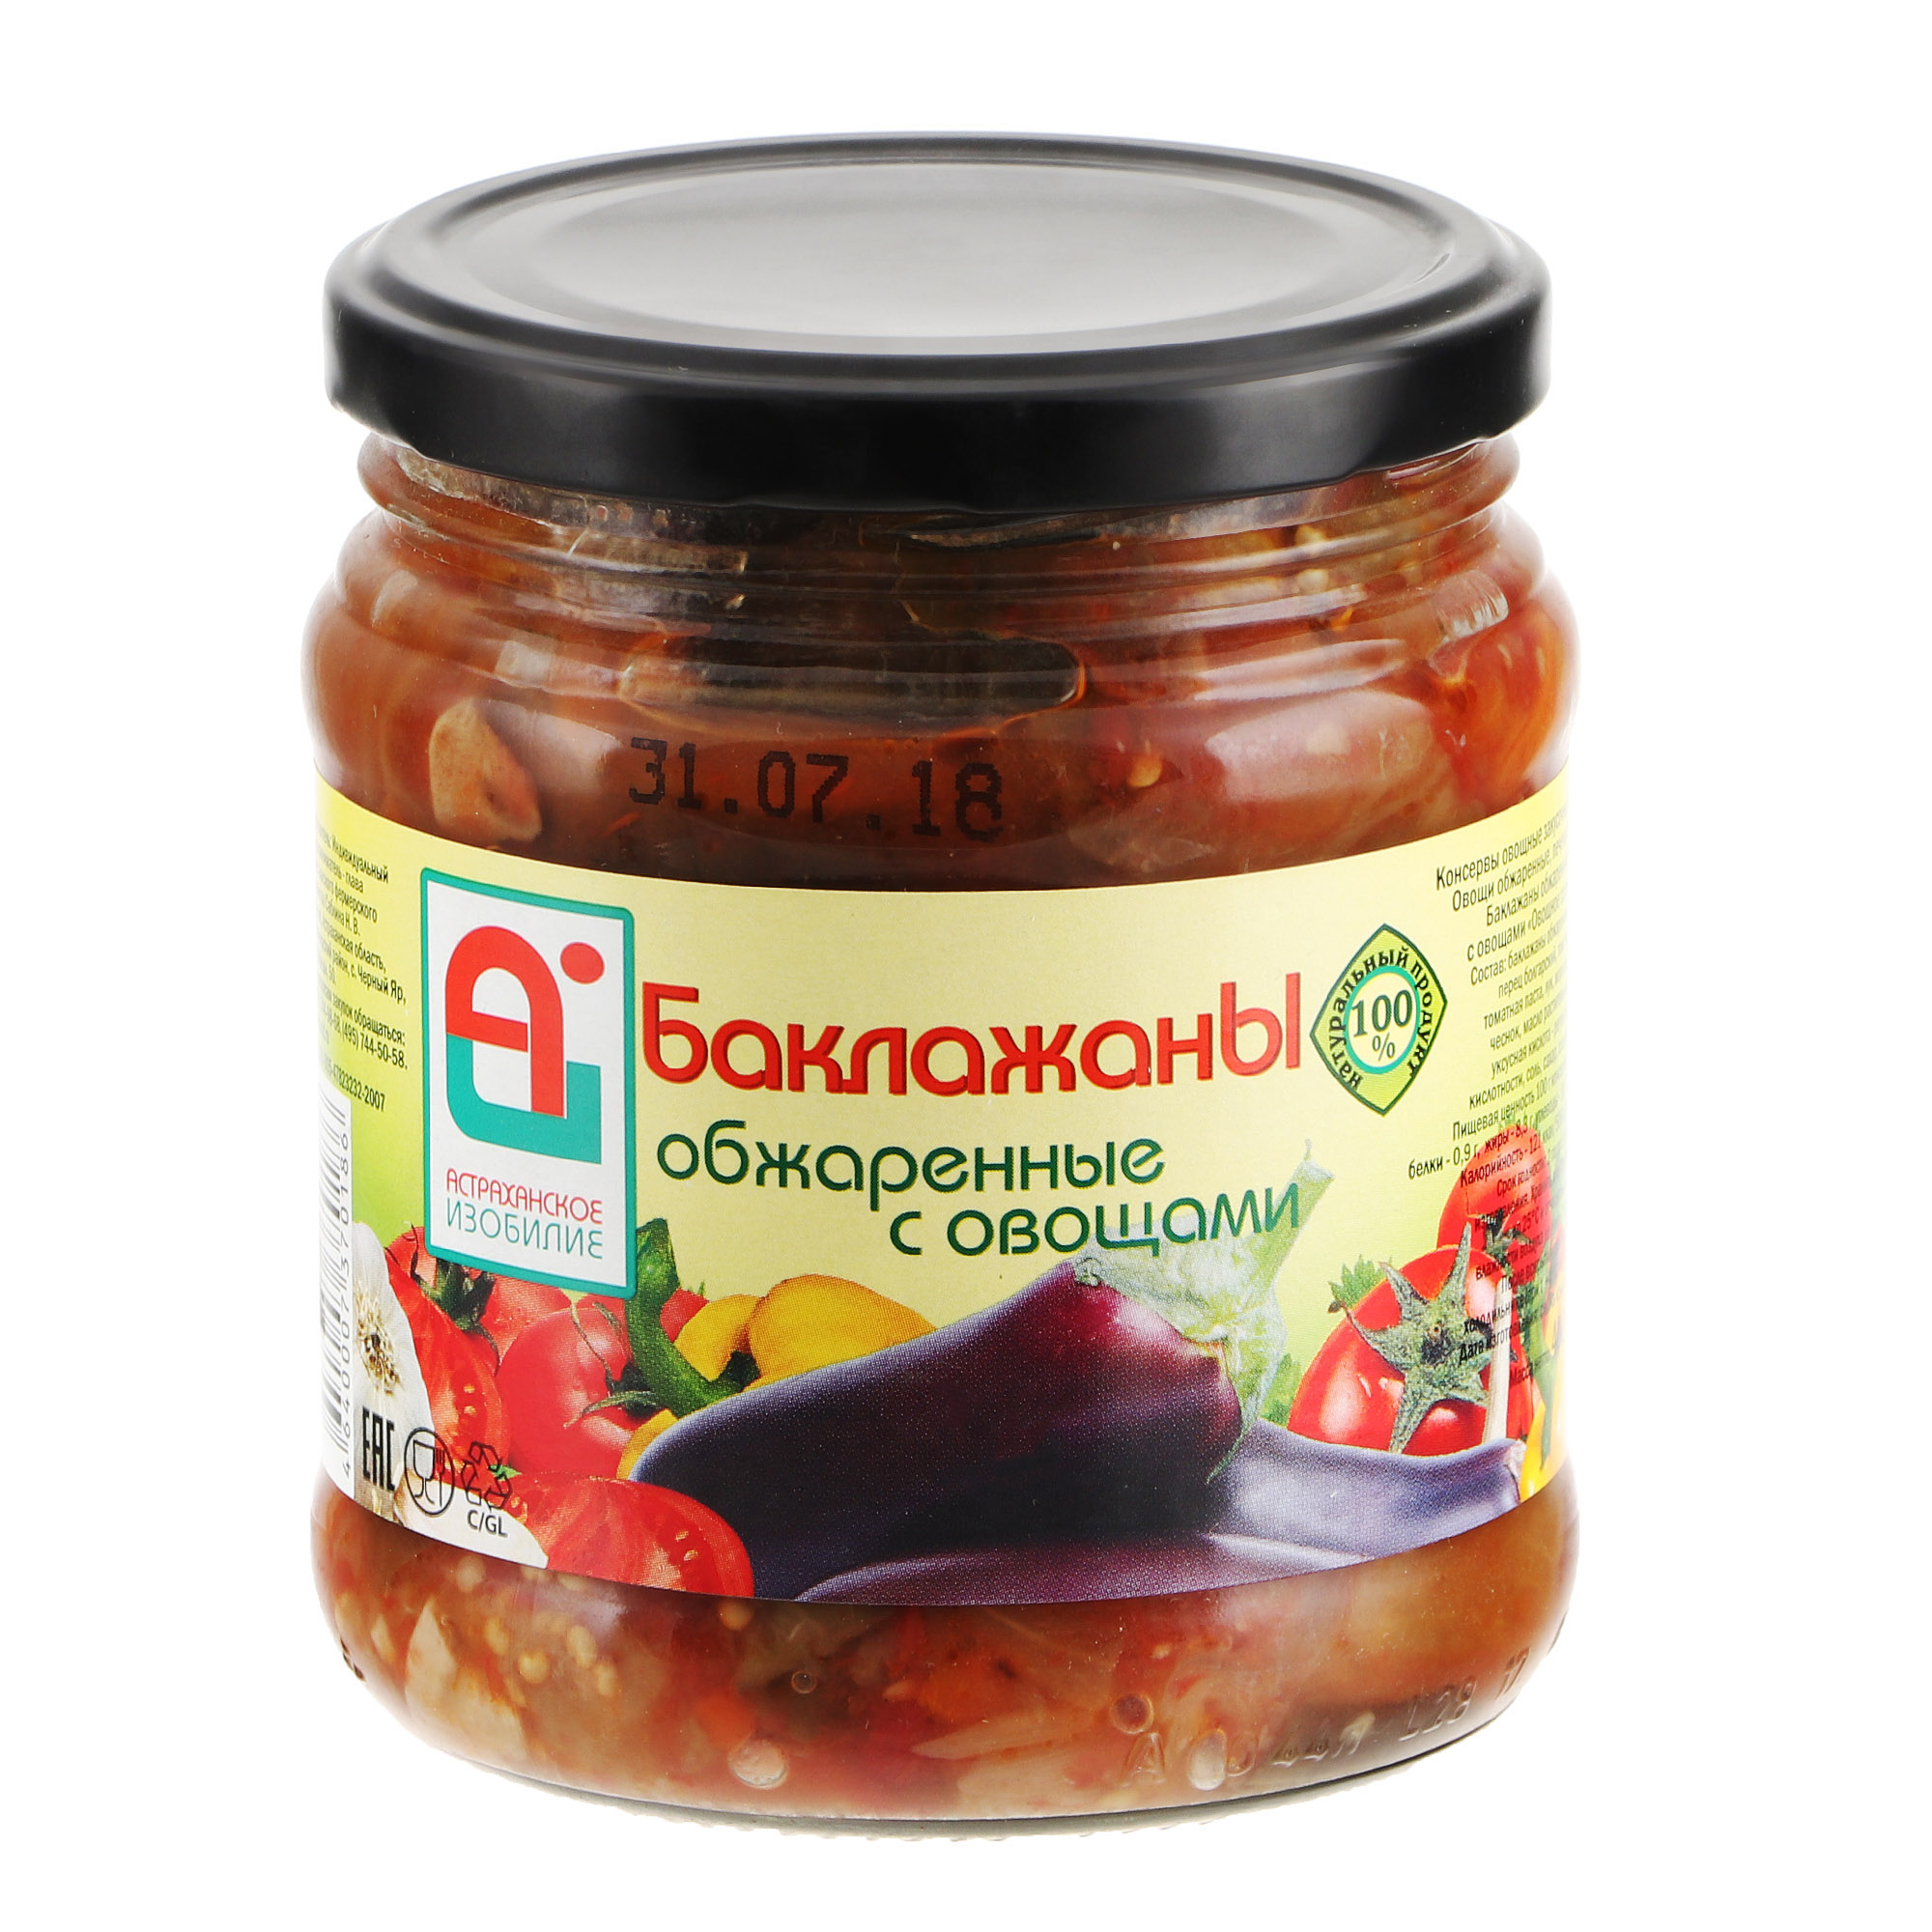 Баклажаны обжаренные Астраханское Изобилие с овощами 500 г томаты маринованные астраханское изобилие со сладким перцем 900 г